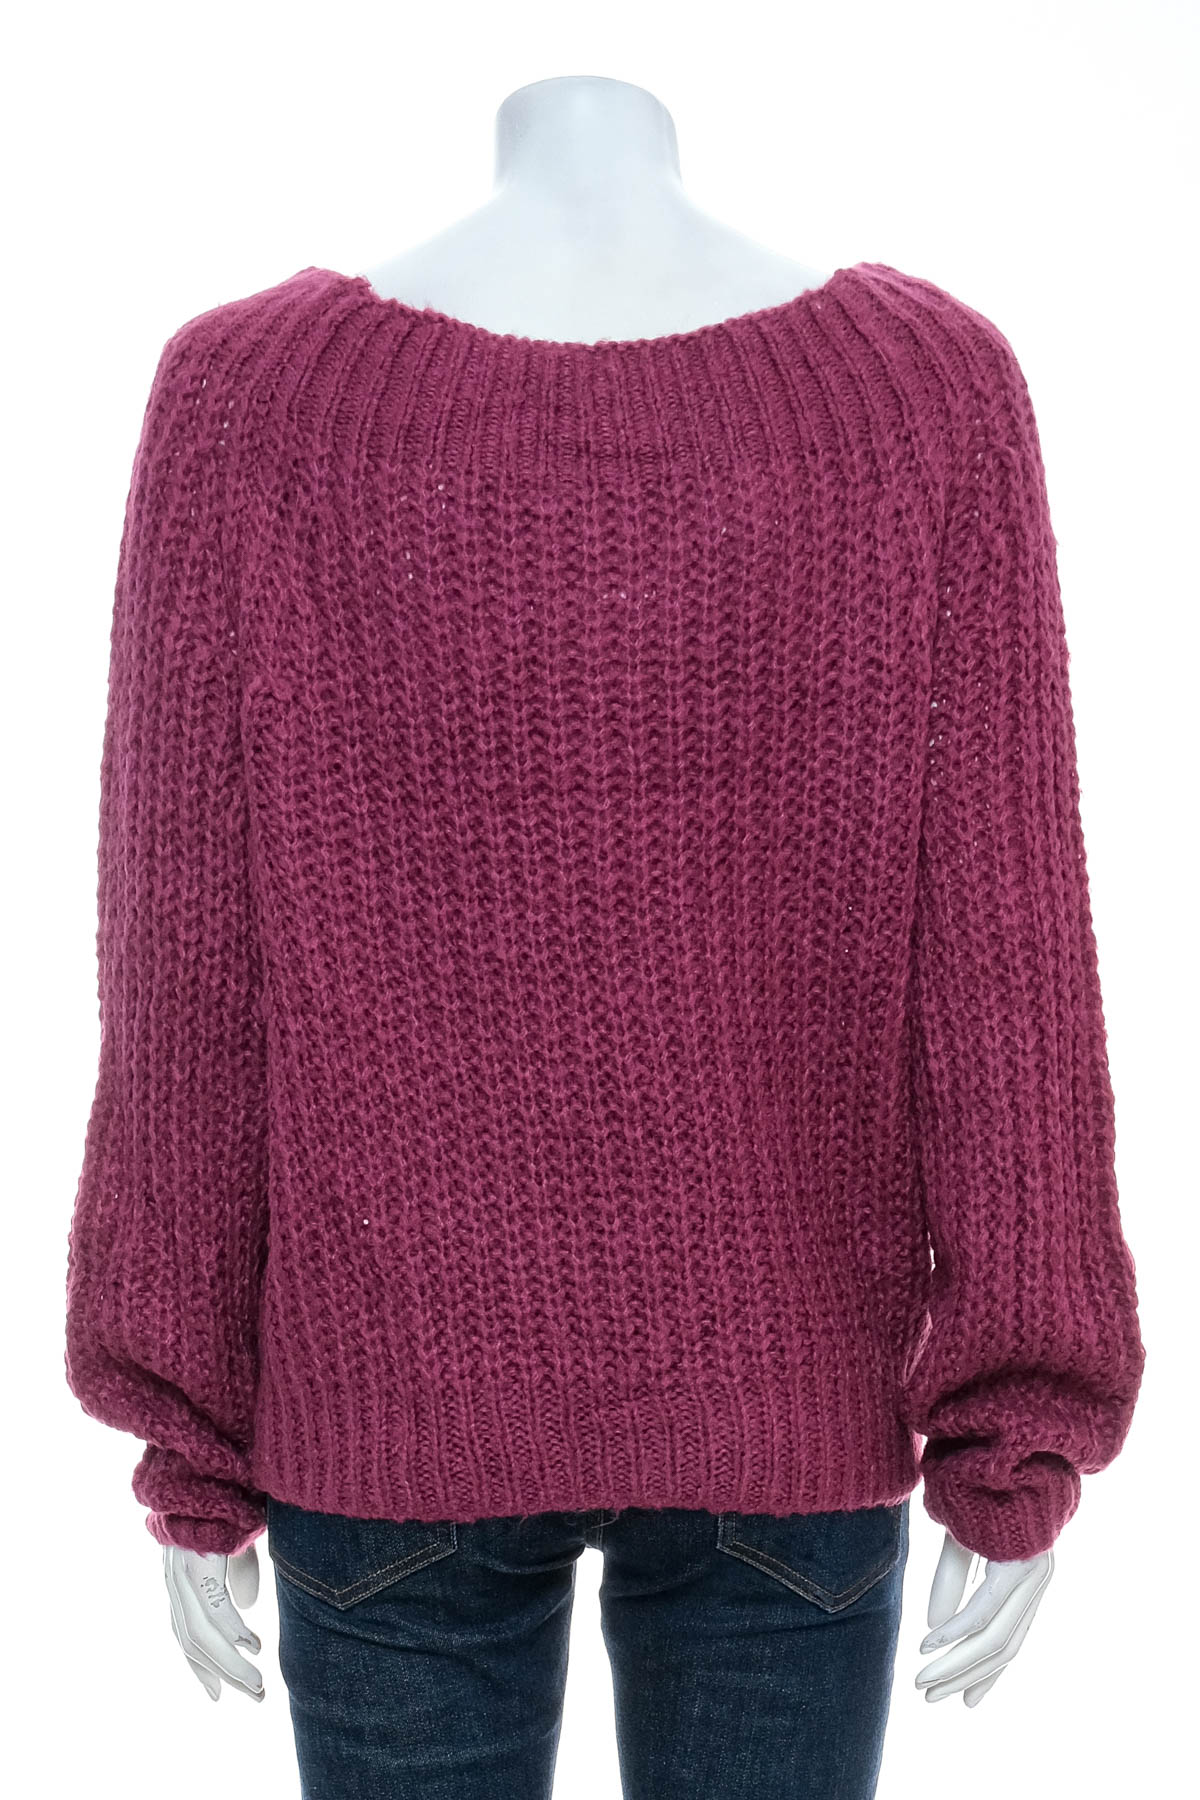 Women's sweater - Rue 21 - 1